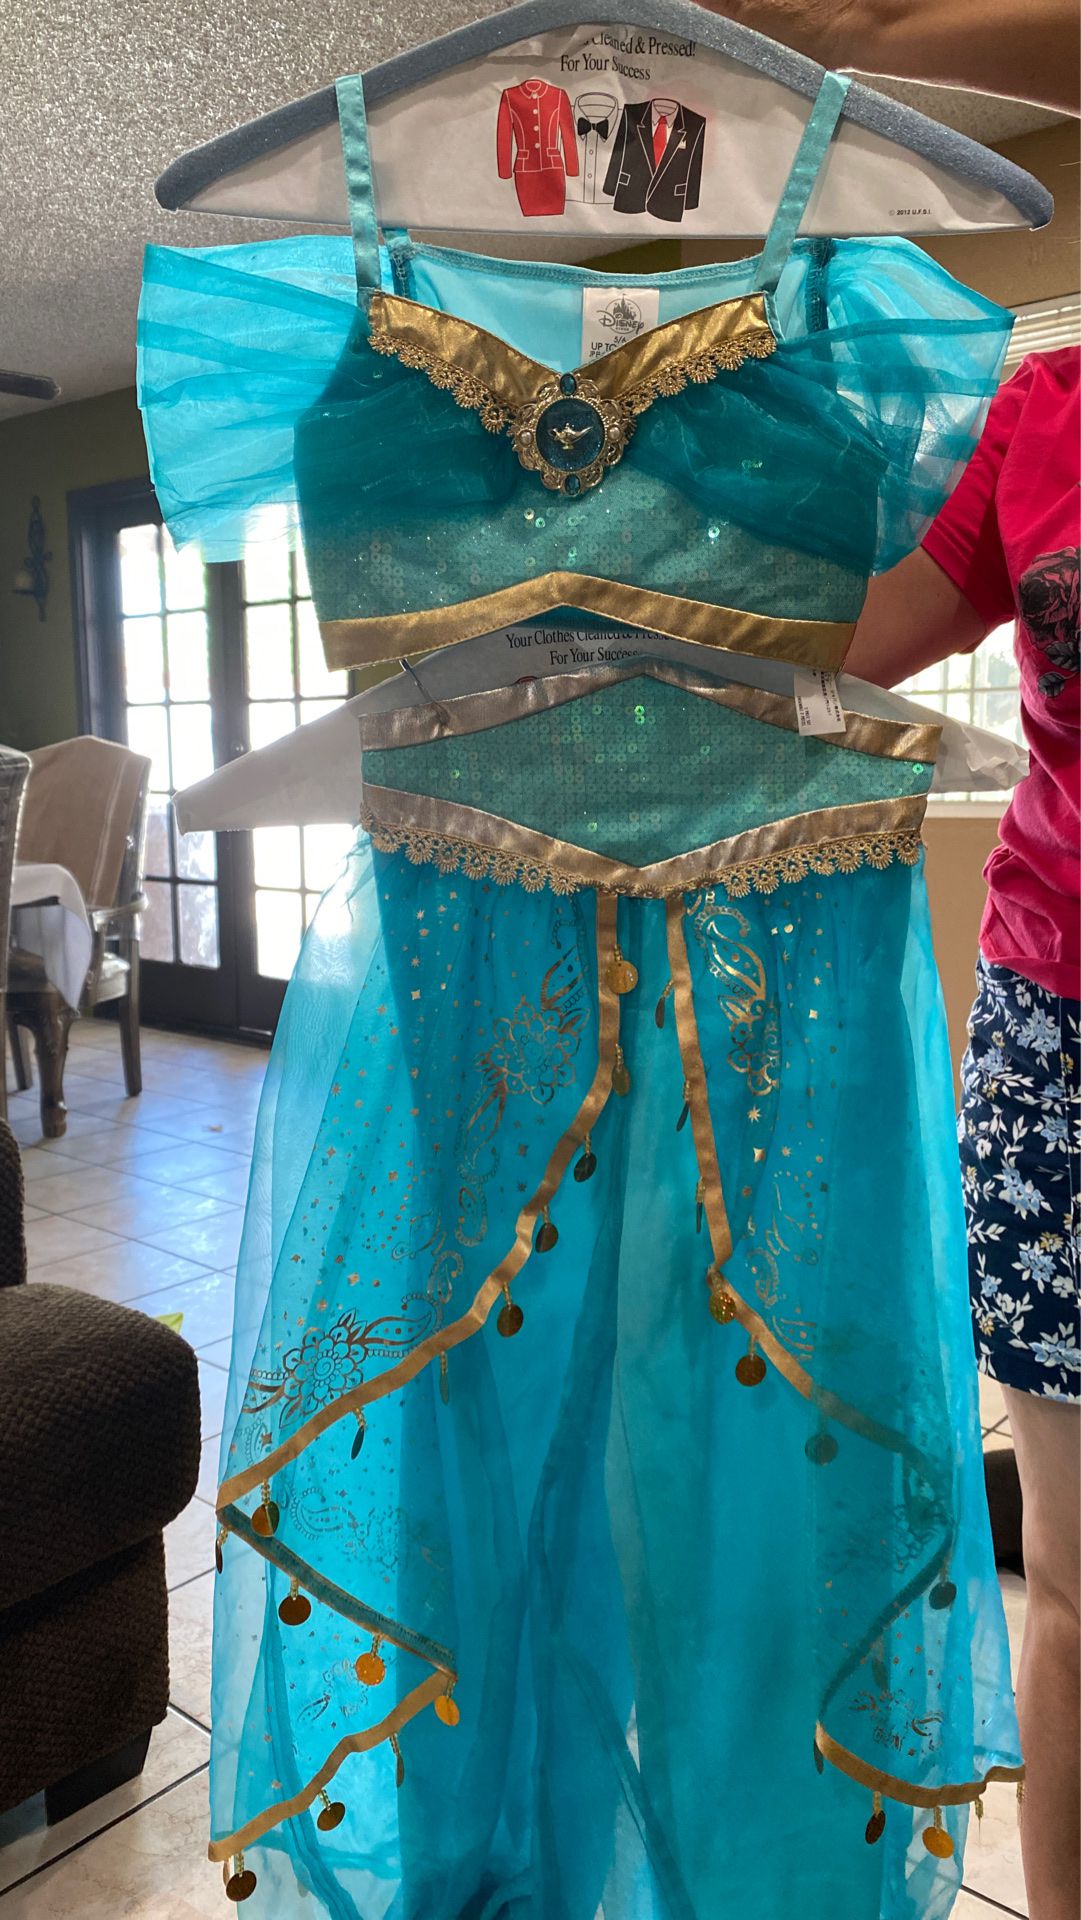 Disney’s Jasmine costumes